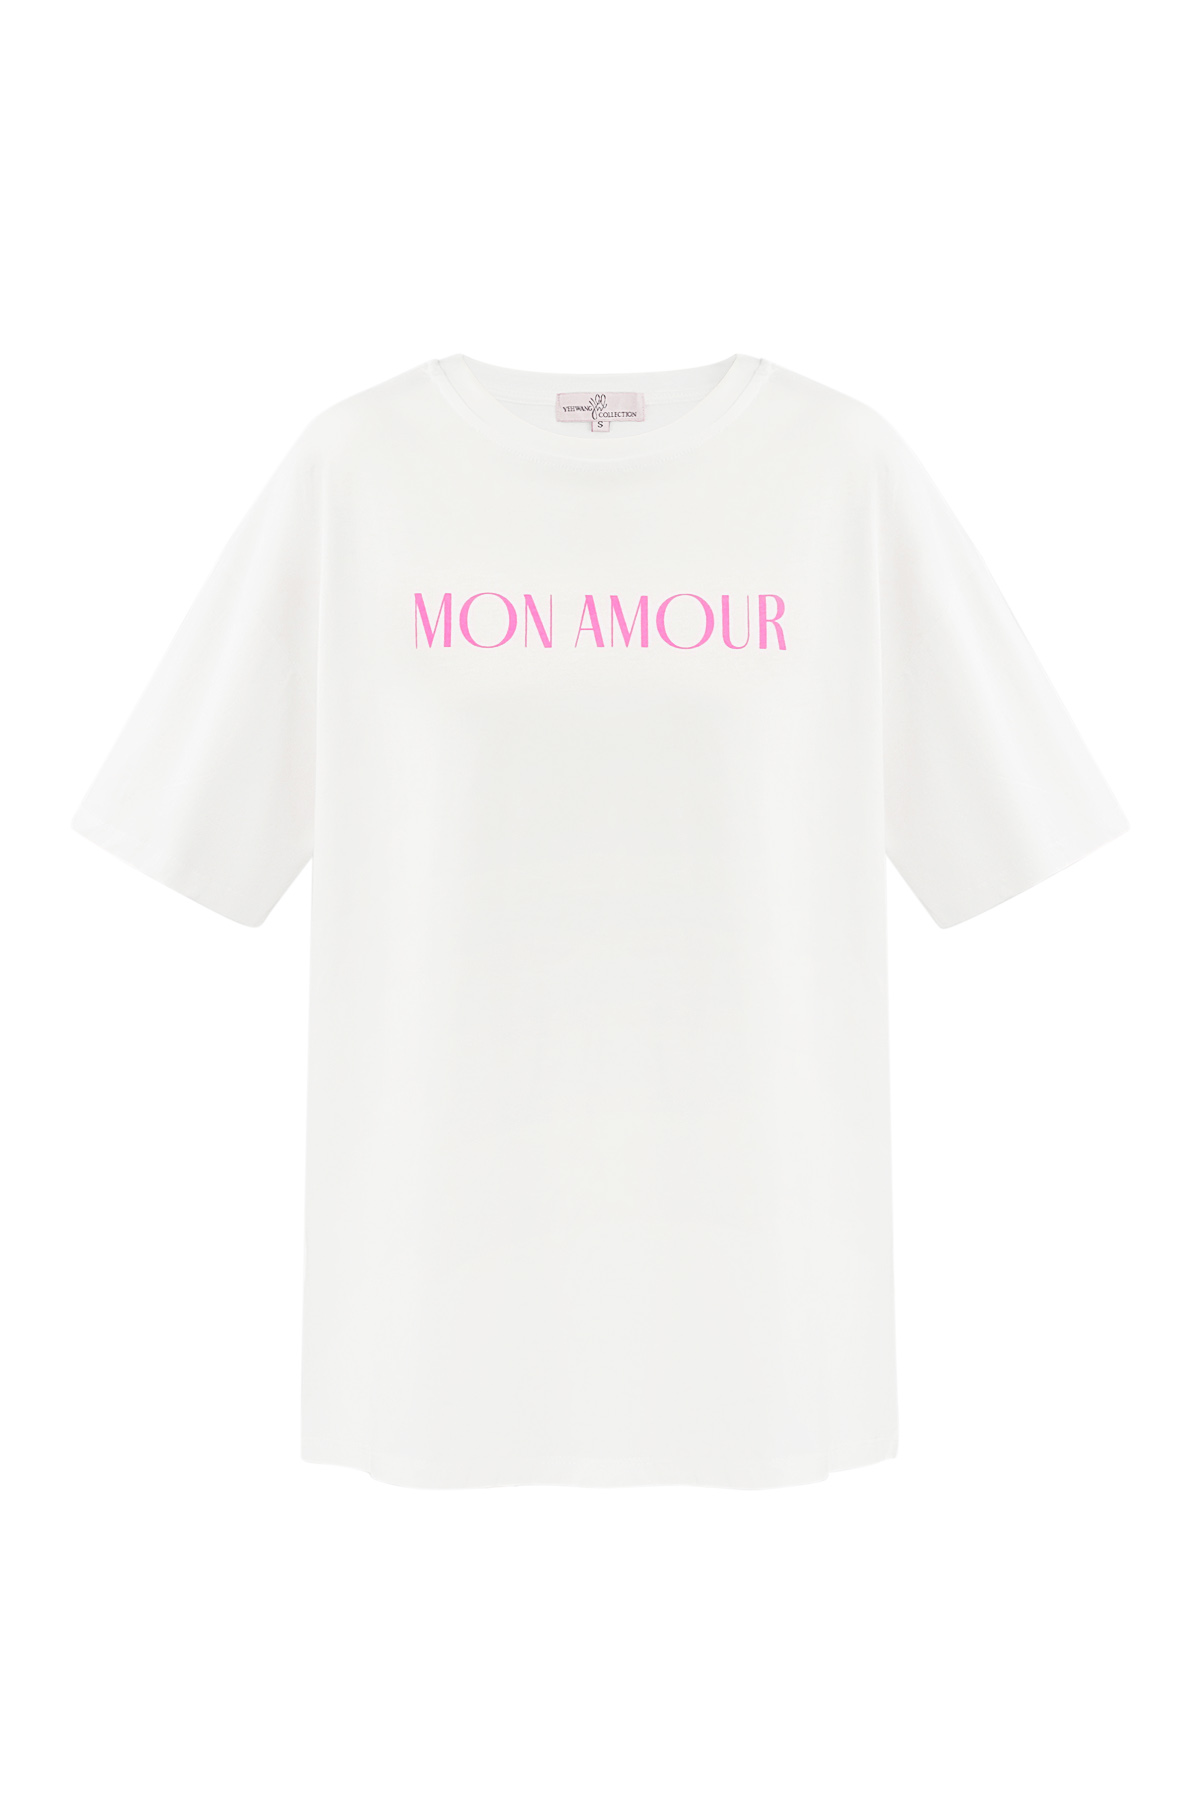 T-shirt mon amour - wit h5 